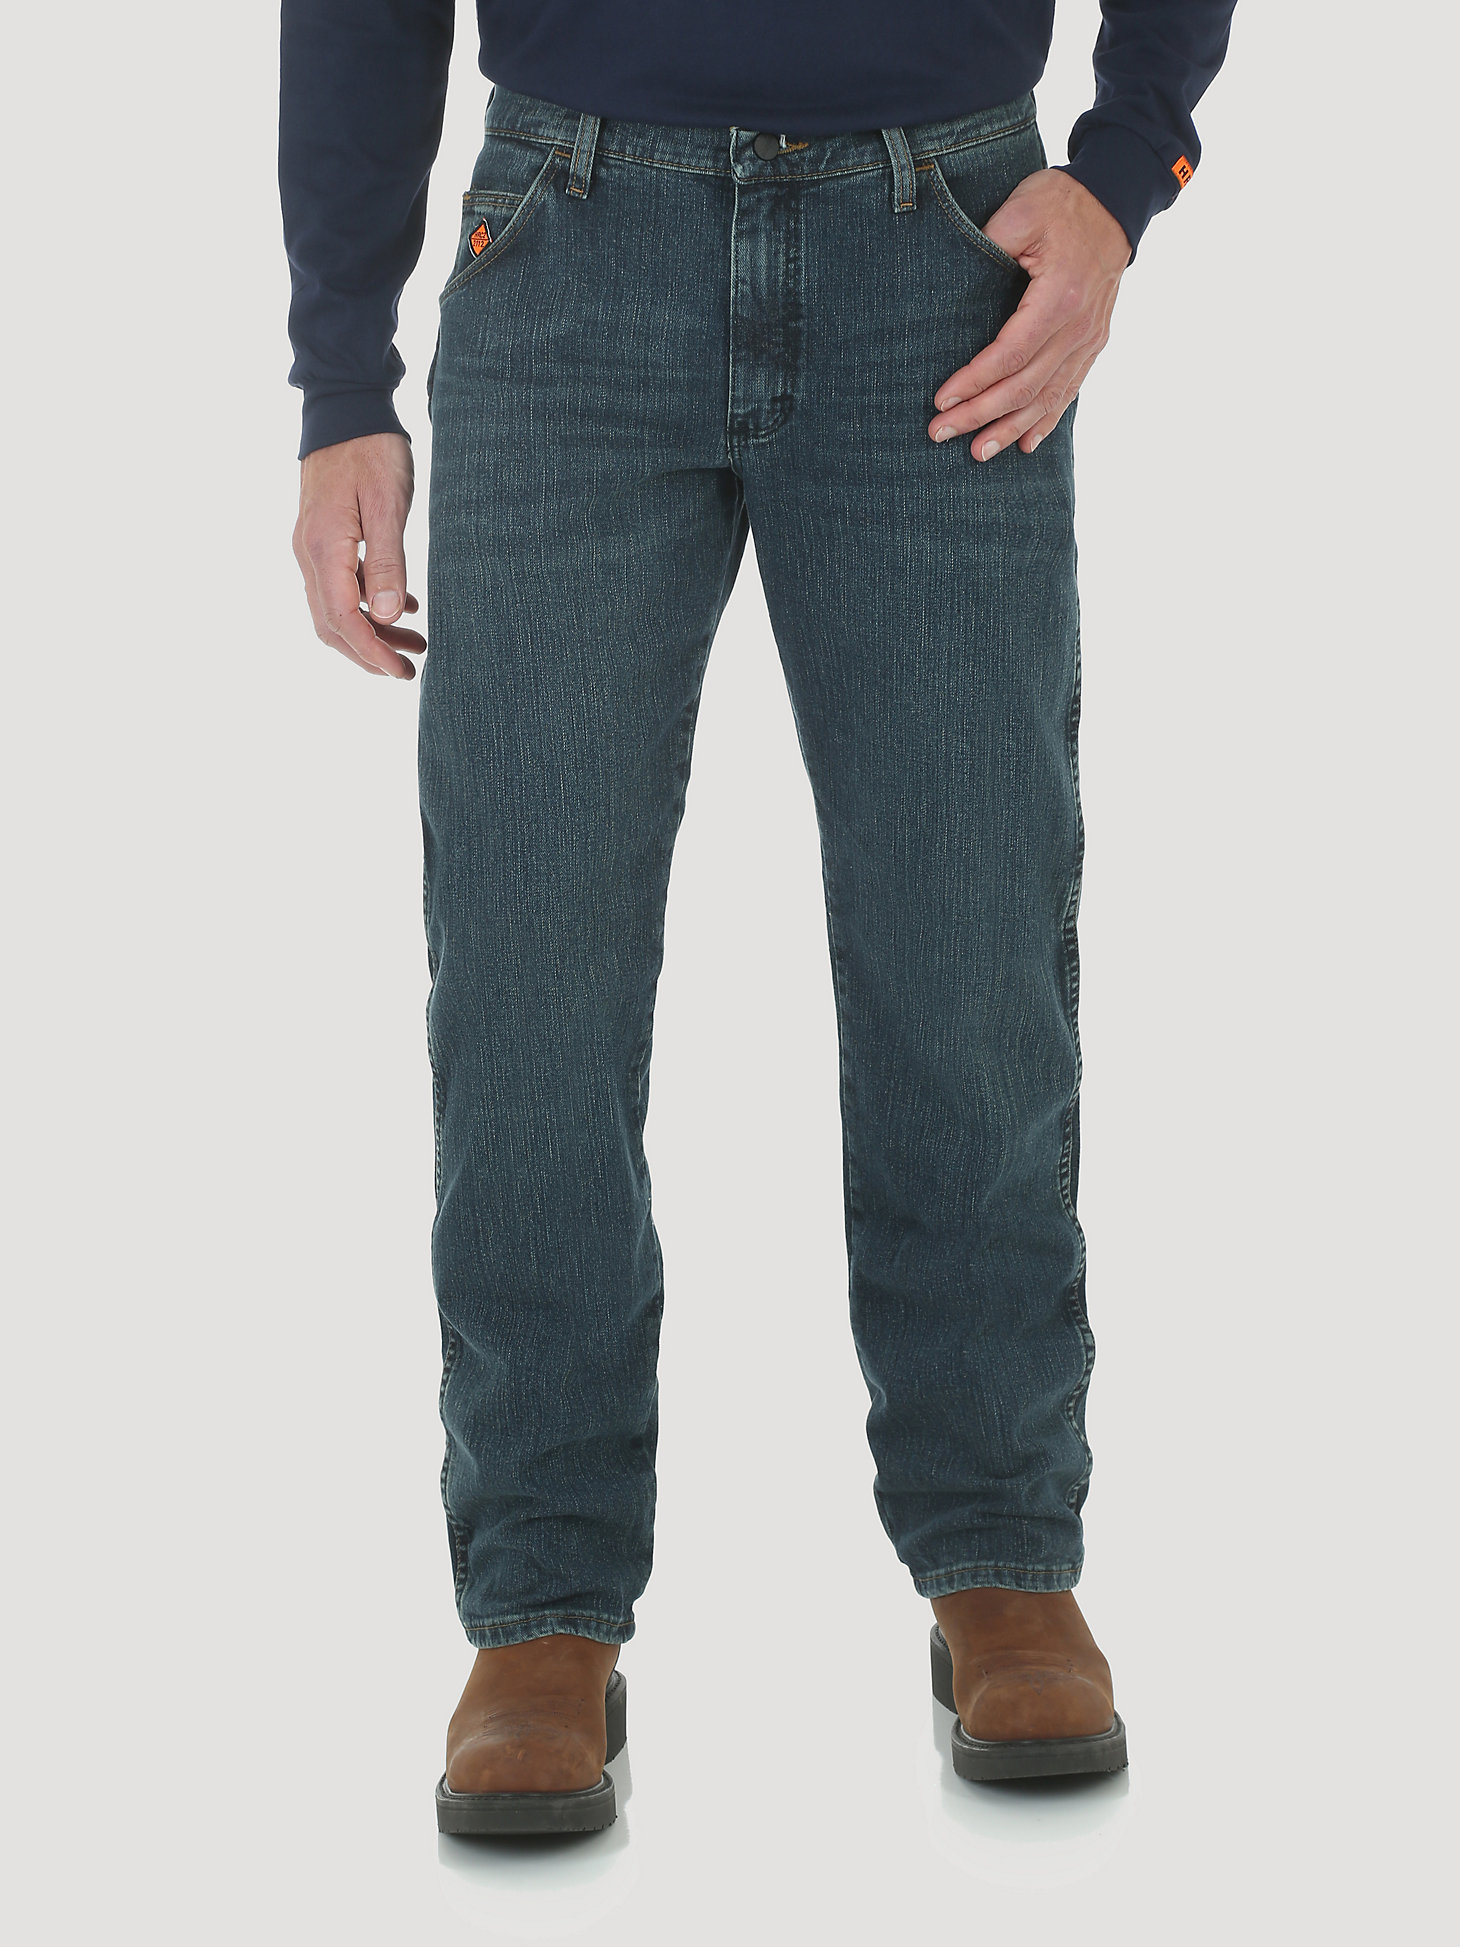 Men's Wrangler® FR Flame Resistant Advanced Comfort Regular Fit Jean in Dark Tint main view